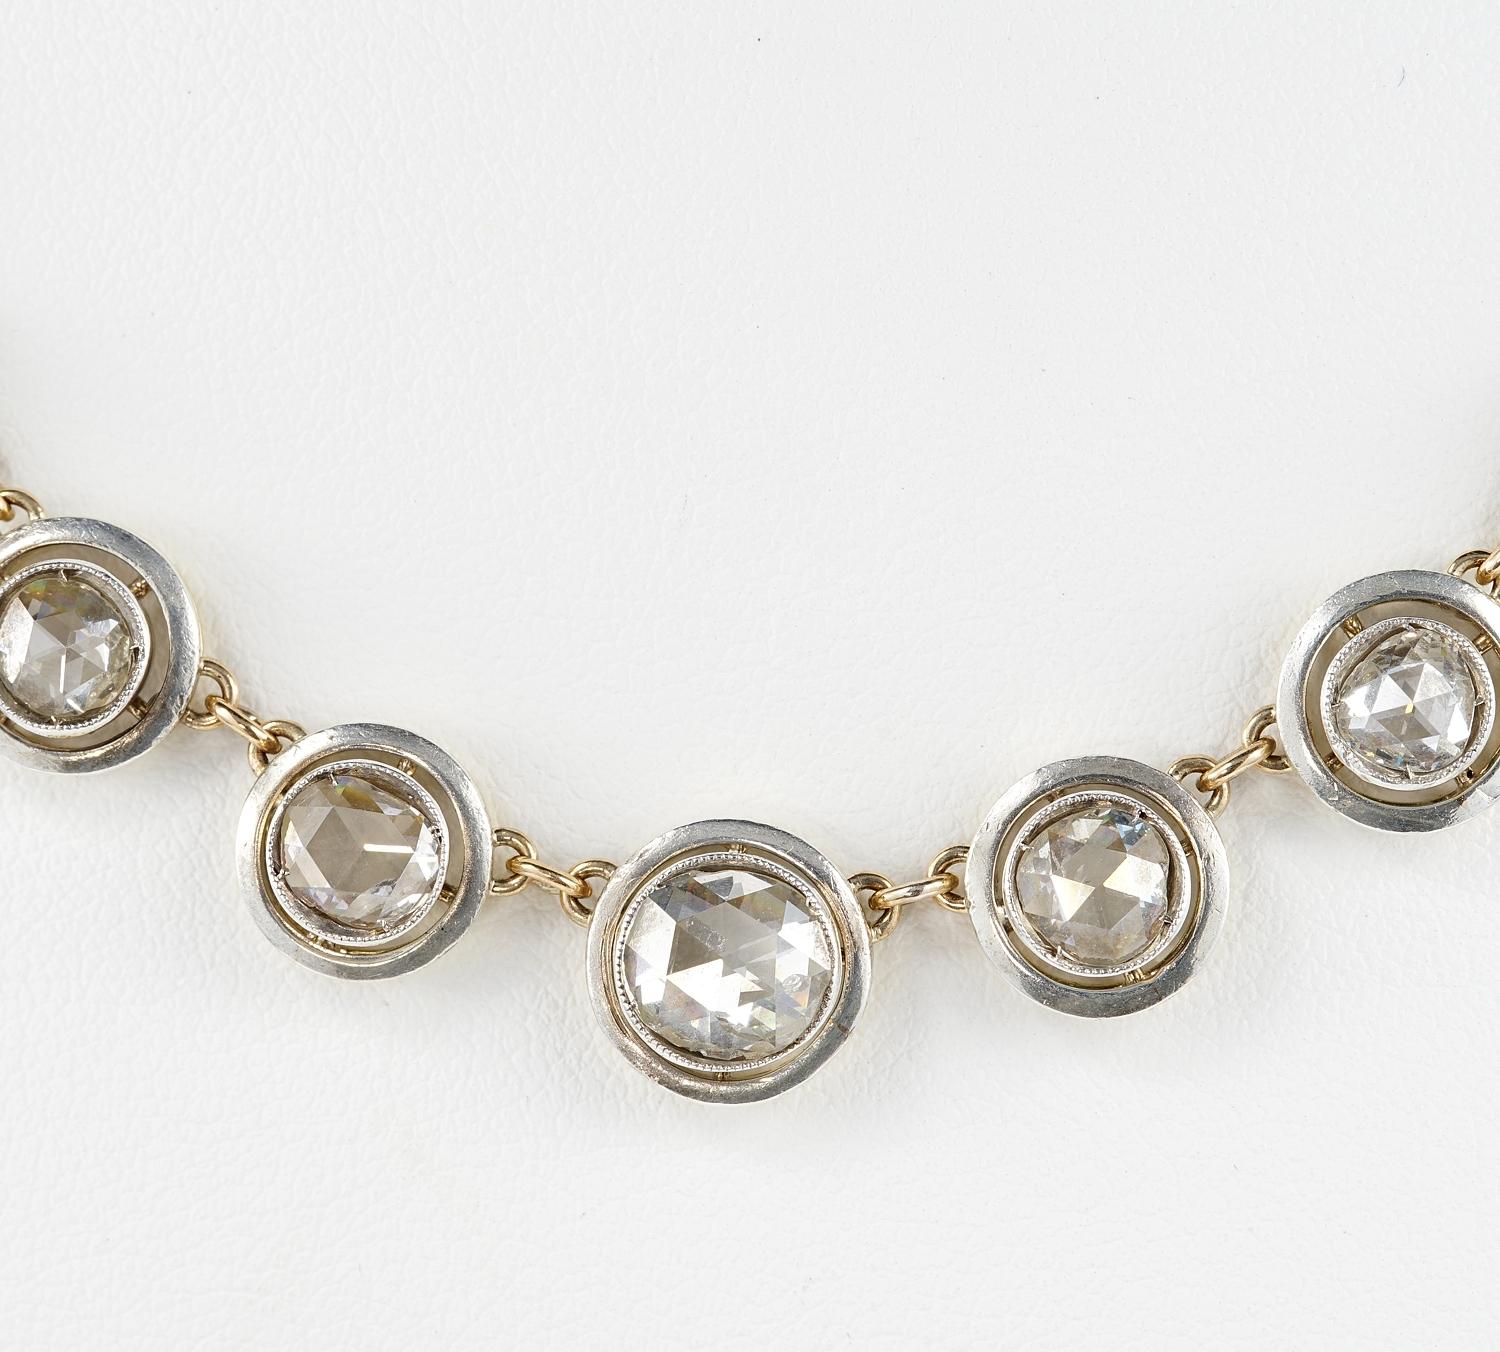 Diamant-Kerzenlicht
Exquisite viktorianische Diamant-Nieten-Halskette
Schlichter Stil mit großer Wirkung, leicht zu tragen, faszinierendes Target-Design, das in der viktorianischen Zeit so in Mode war und auch heute noch gefragt ist.
Handgefertigt